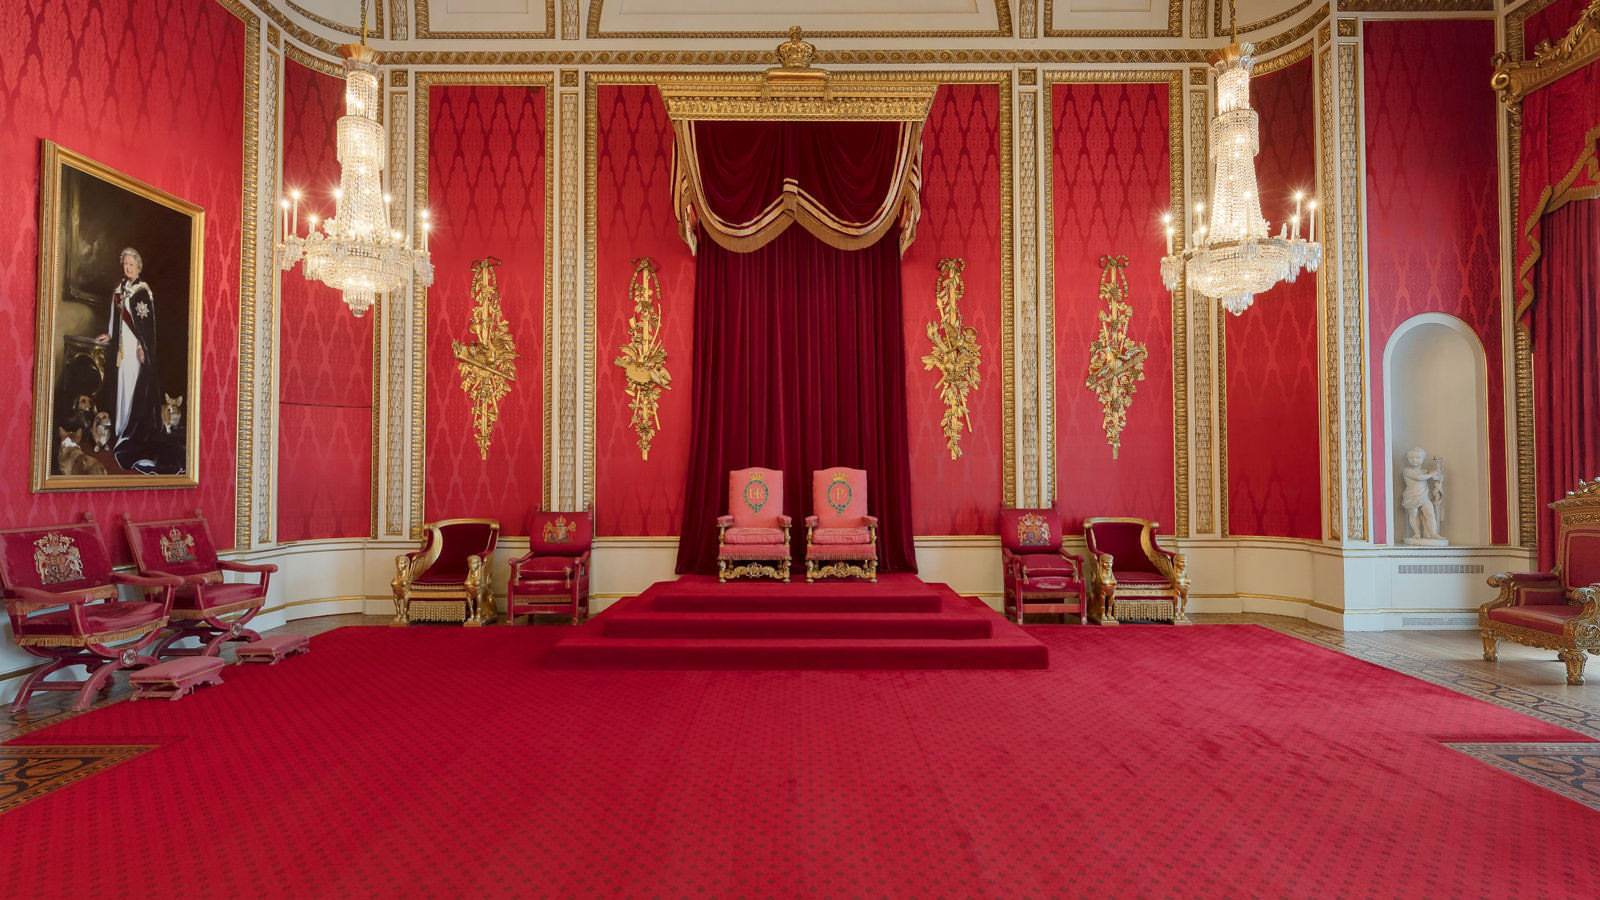 Royal Palace 360 Tours | Buckingham Palace | Windsor Castle | 360 VR